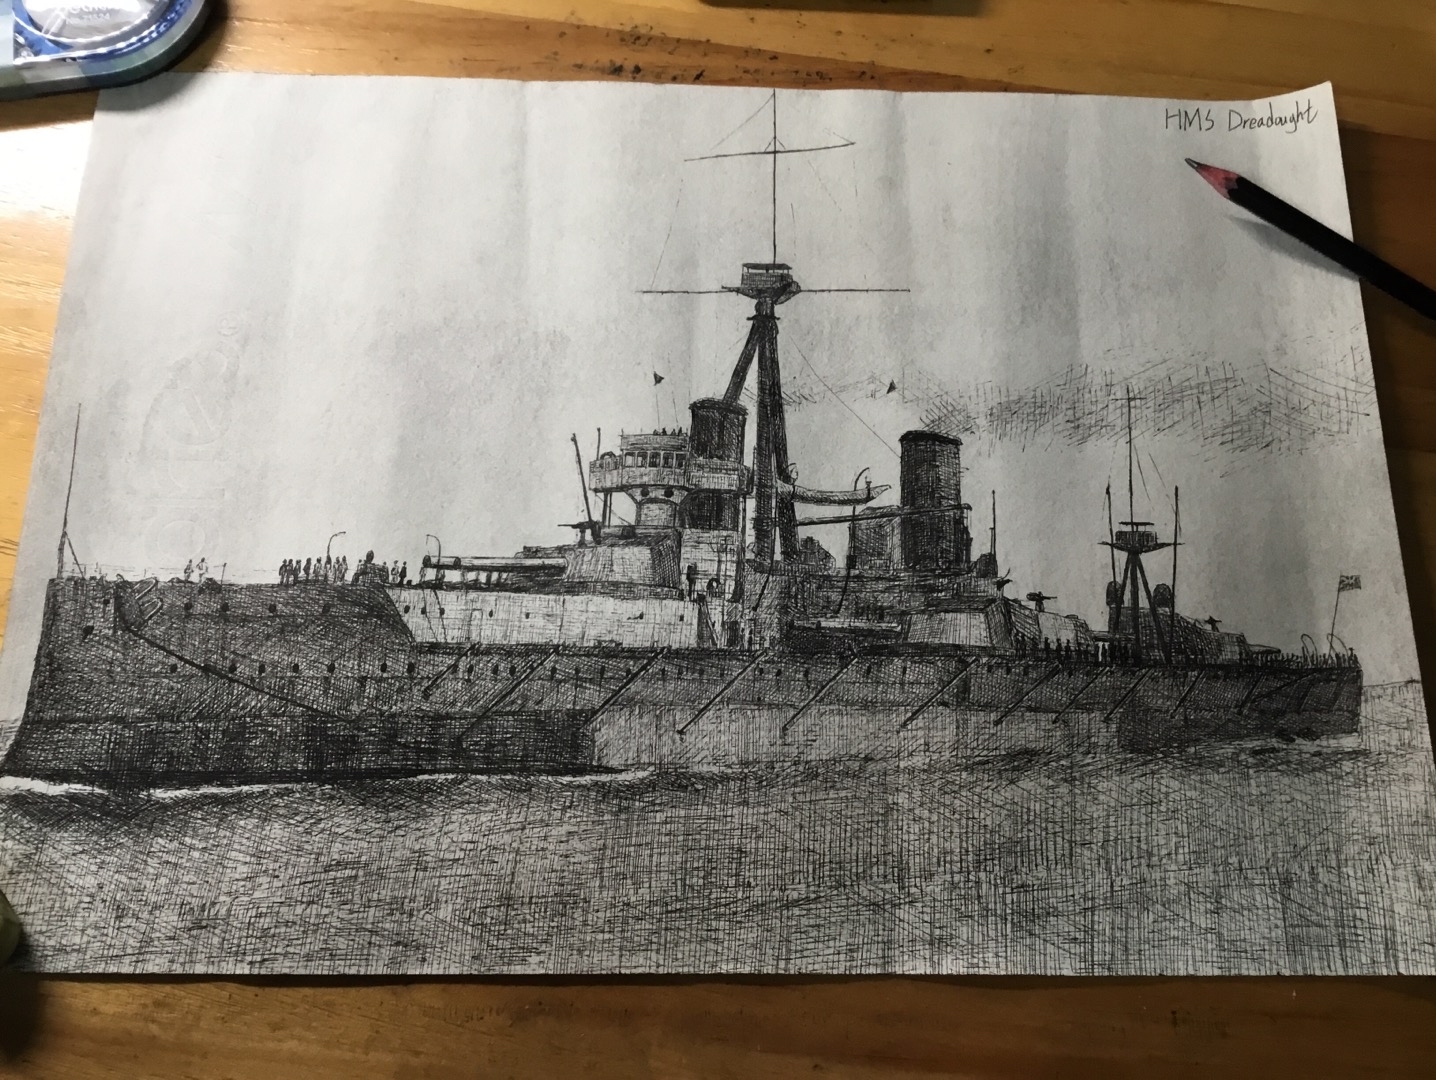 战列舰怎么画 画法图片